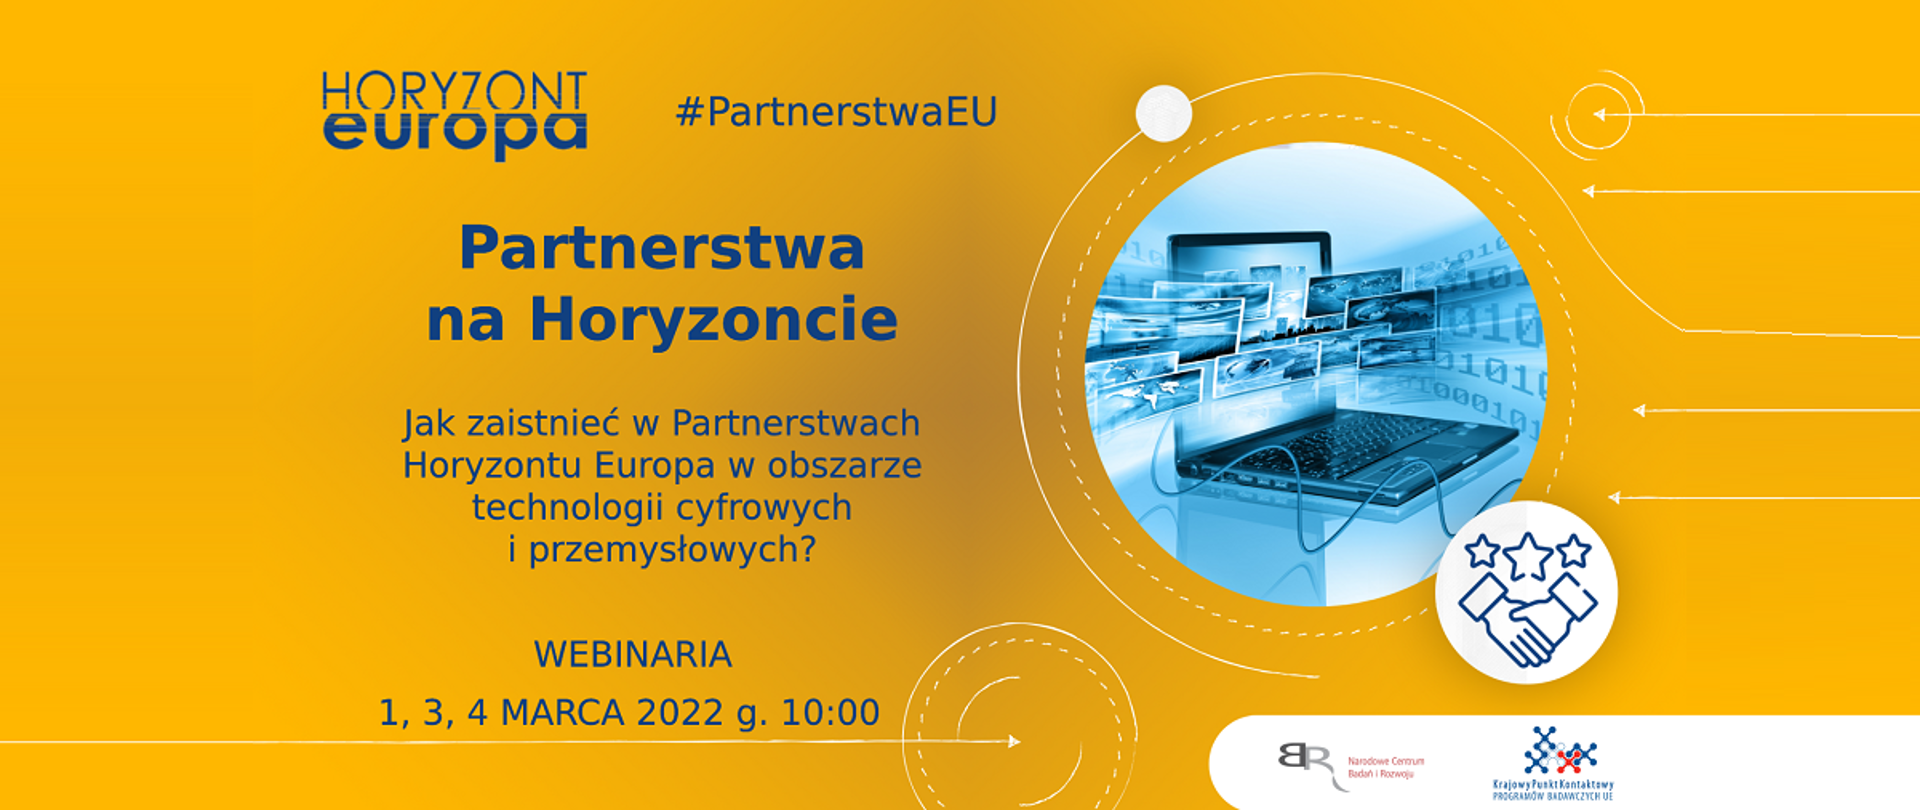 Horyzont Europa
#PartnerstwaEU
Partnerstwa na Horyzoncie
Jak zaistnieć w Partnerstwach Horyzontu Europa w obszarze technologii cyfrowych i przemysłowych?
Webinaria
1,3,4 marca 2022 g. 10:00